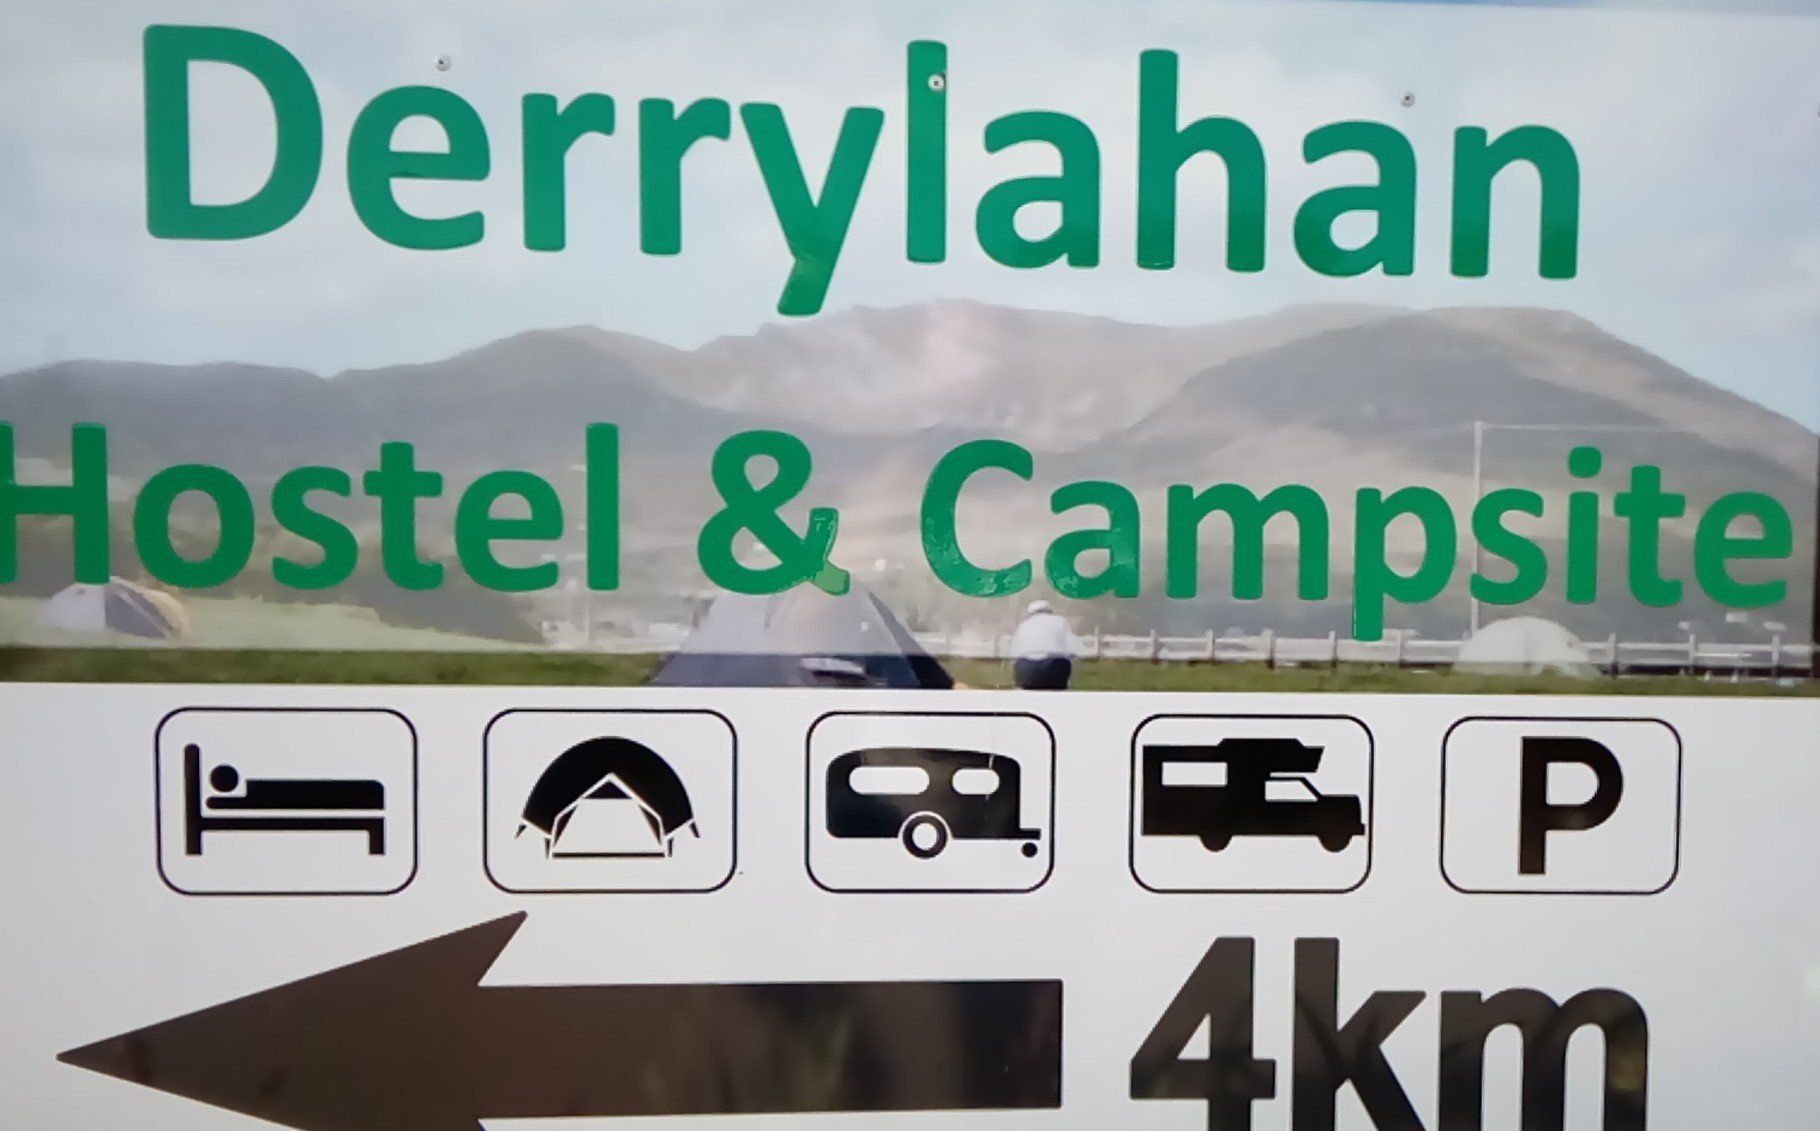 Derrylahan Caravan & Camping Park CampingNI